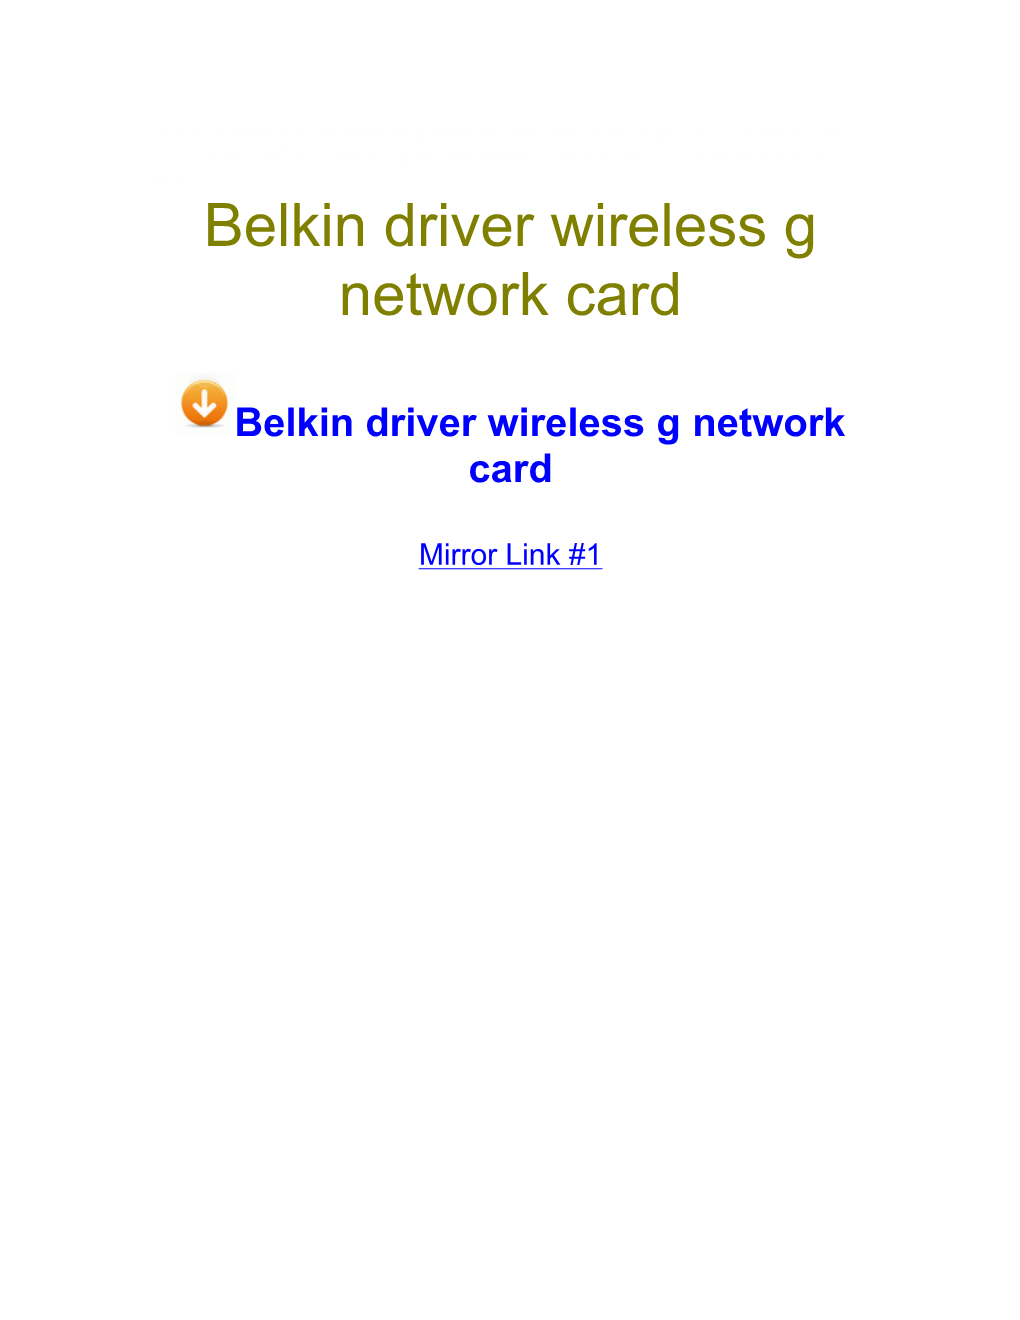 Belkin Driver Wireless G Network Card